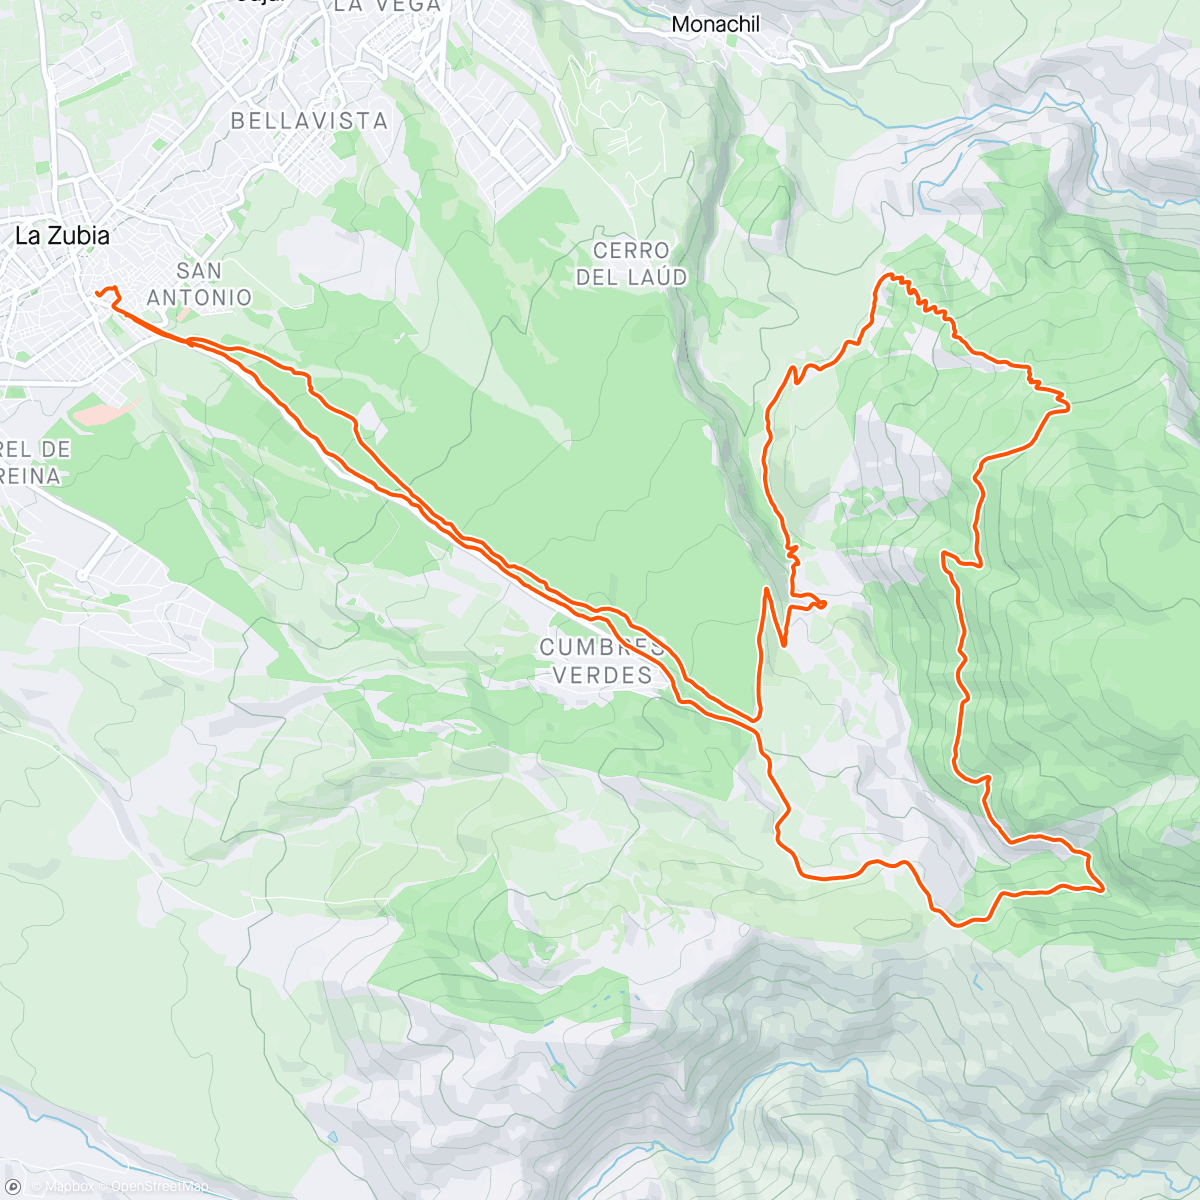 アクティビティ「Bicicleta de montaña eléctrica por la tarde」の地図